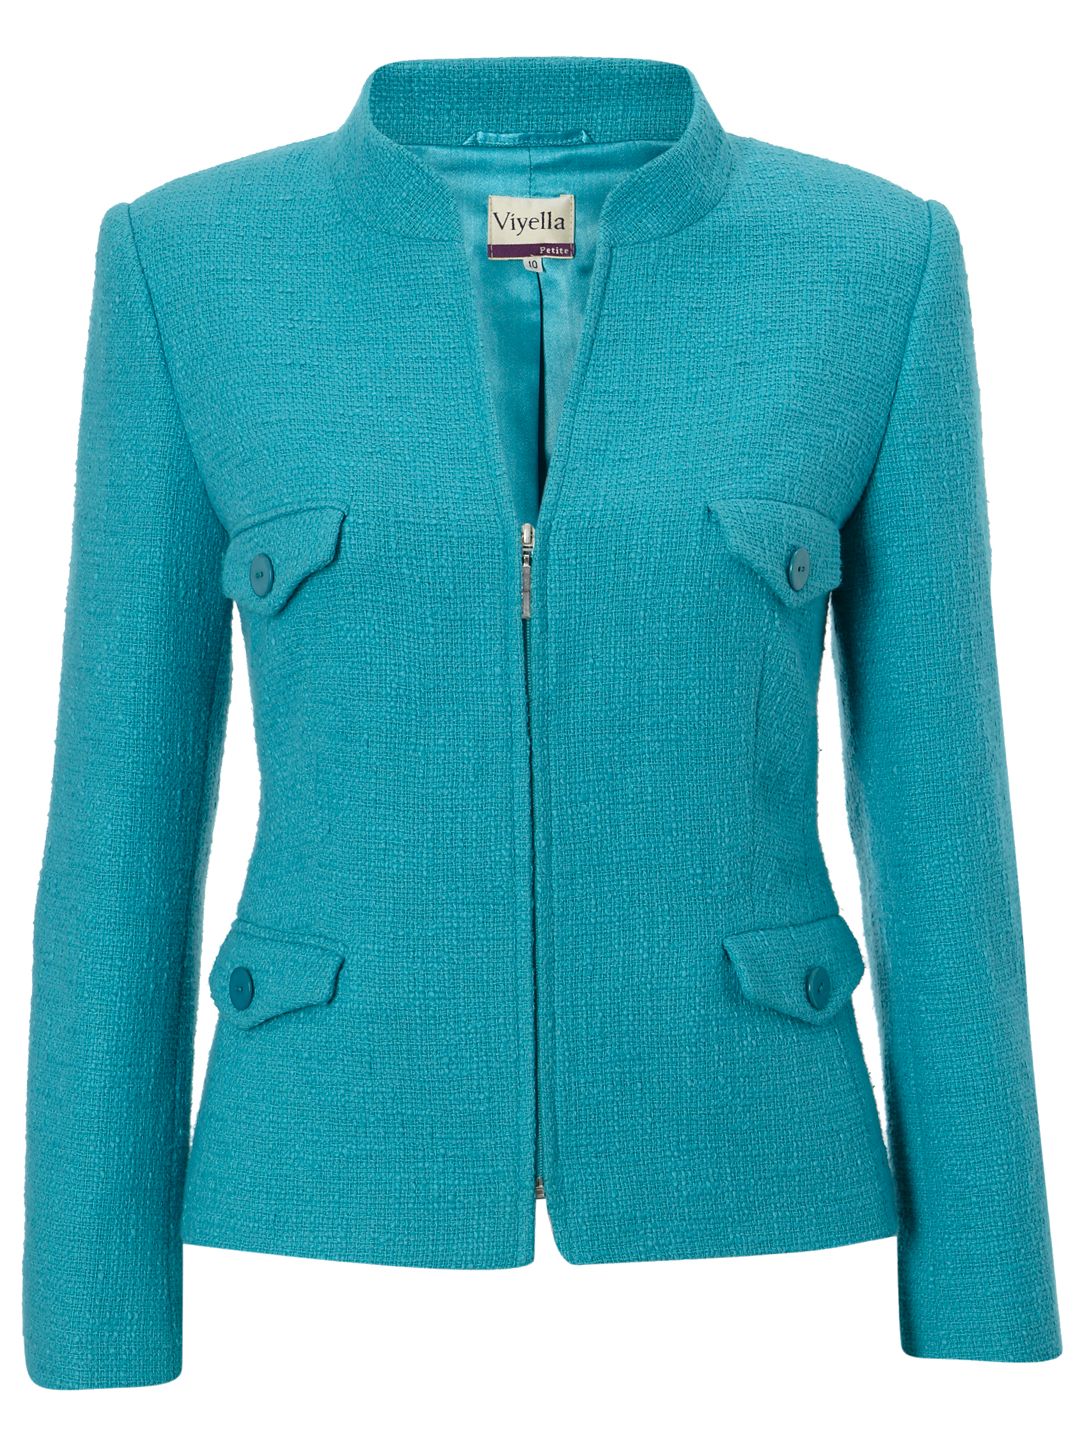 Viyella Petite Tweed Zip Jacket, Turquoise at John Lewis